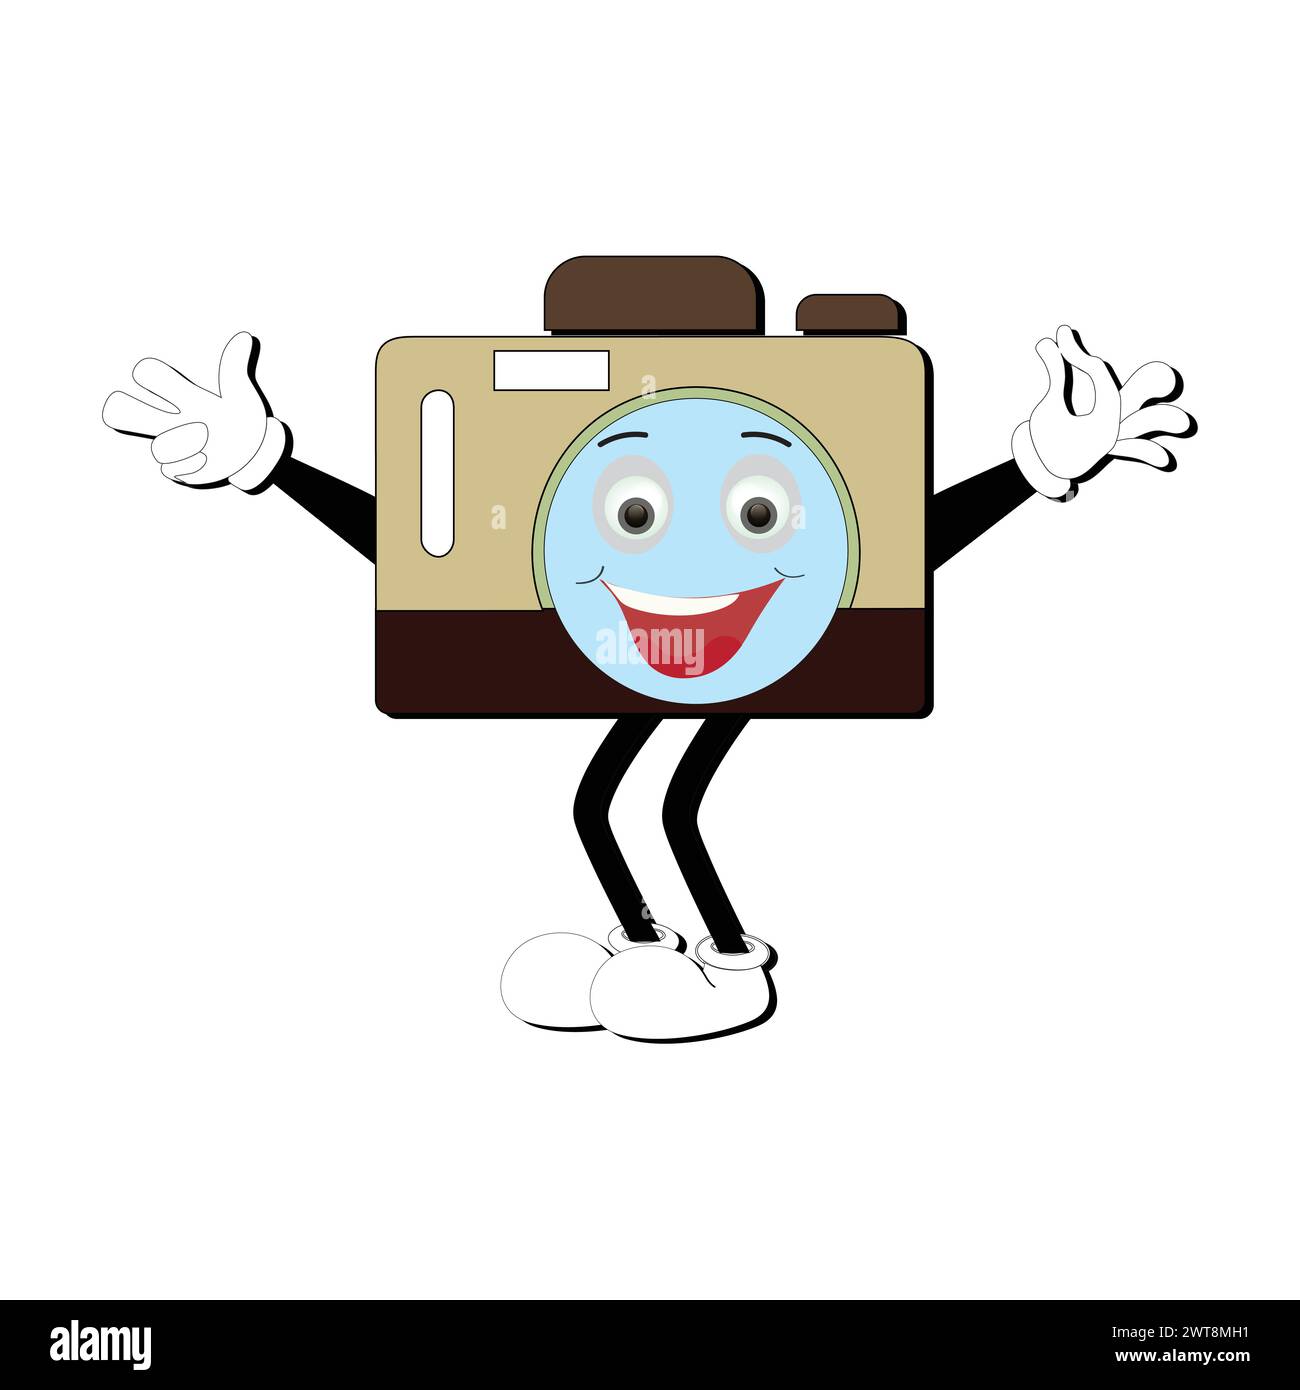 Il cartoni animati del personaggio di camera retro Mascot, la mascotte della fotocamera sorride e con i pollici in alto. Illustrazione vettoriale disegnata a mano Illustrazione Vettoriale